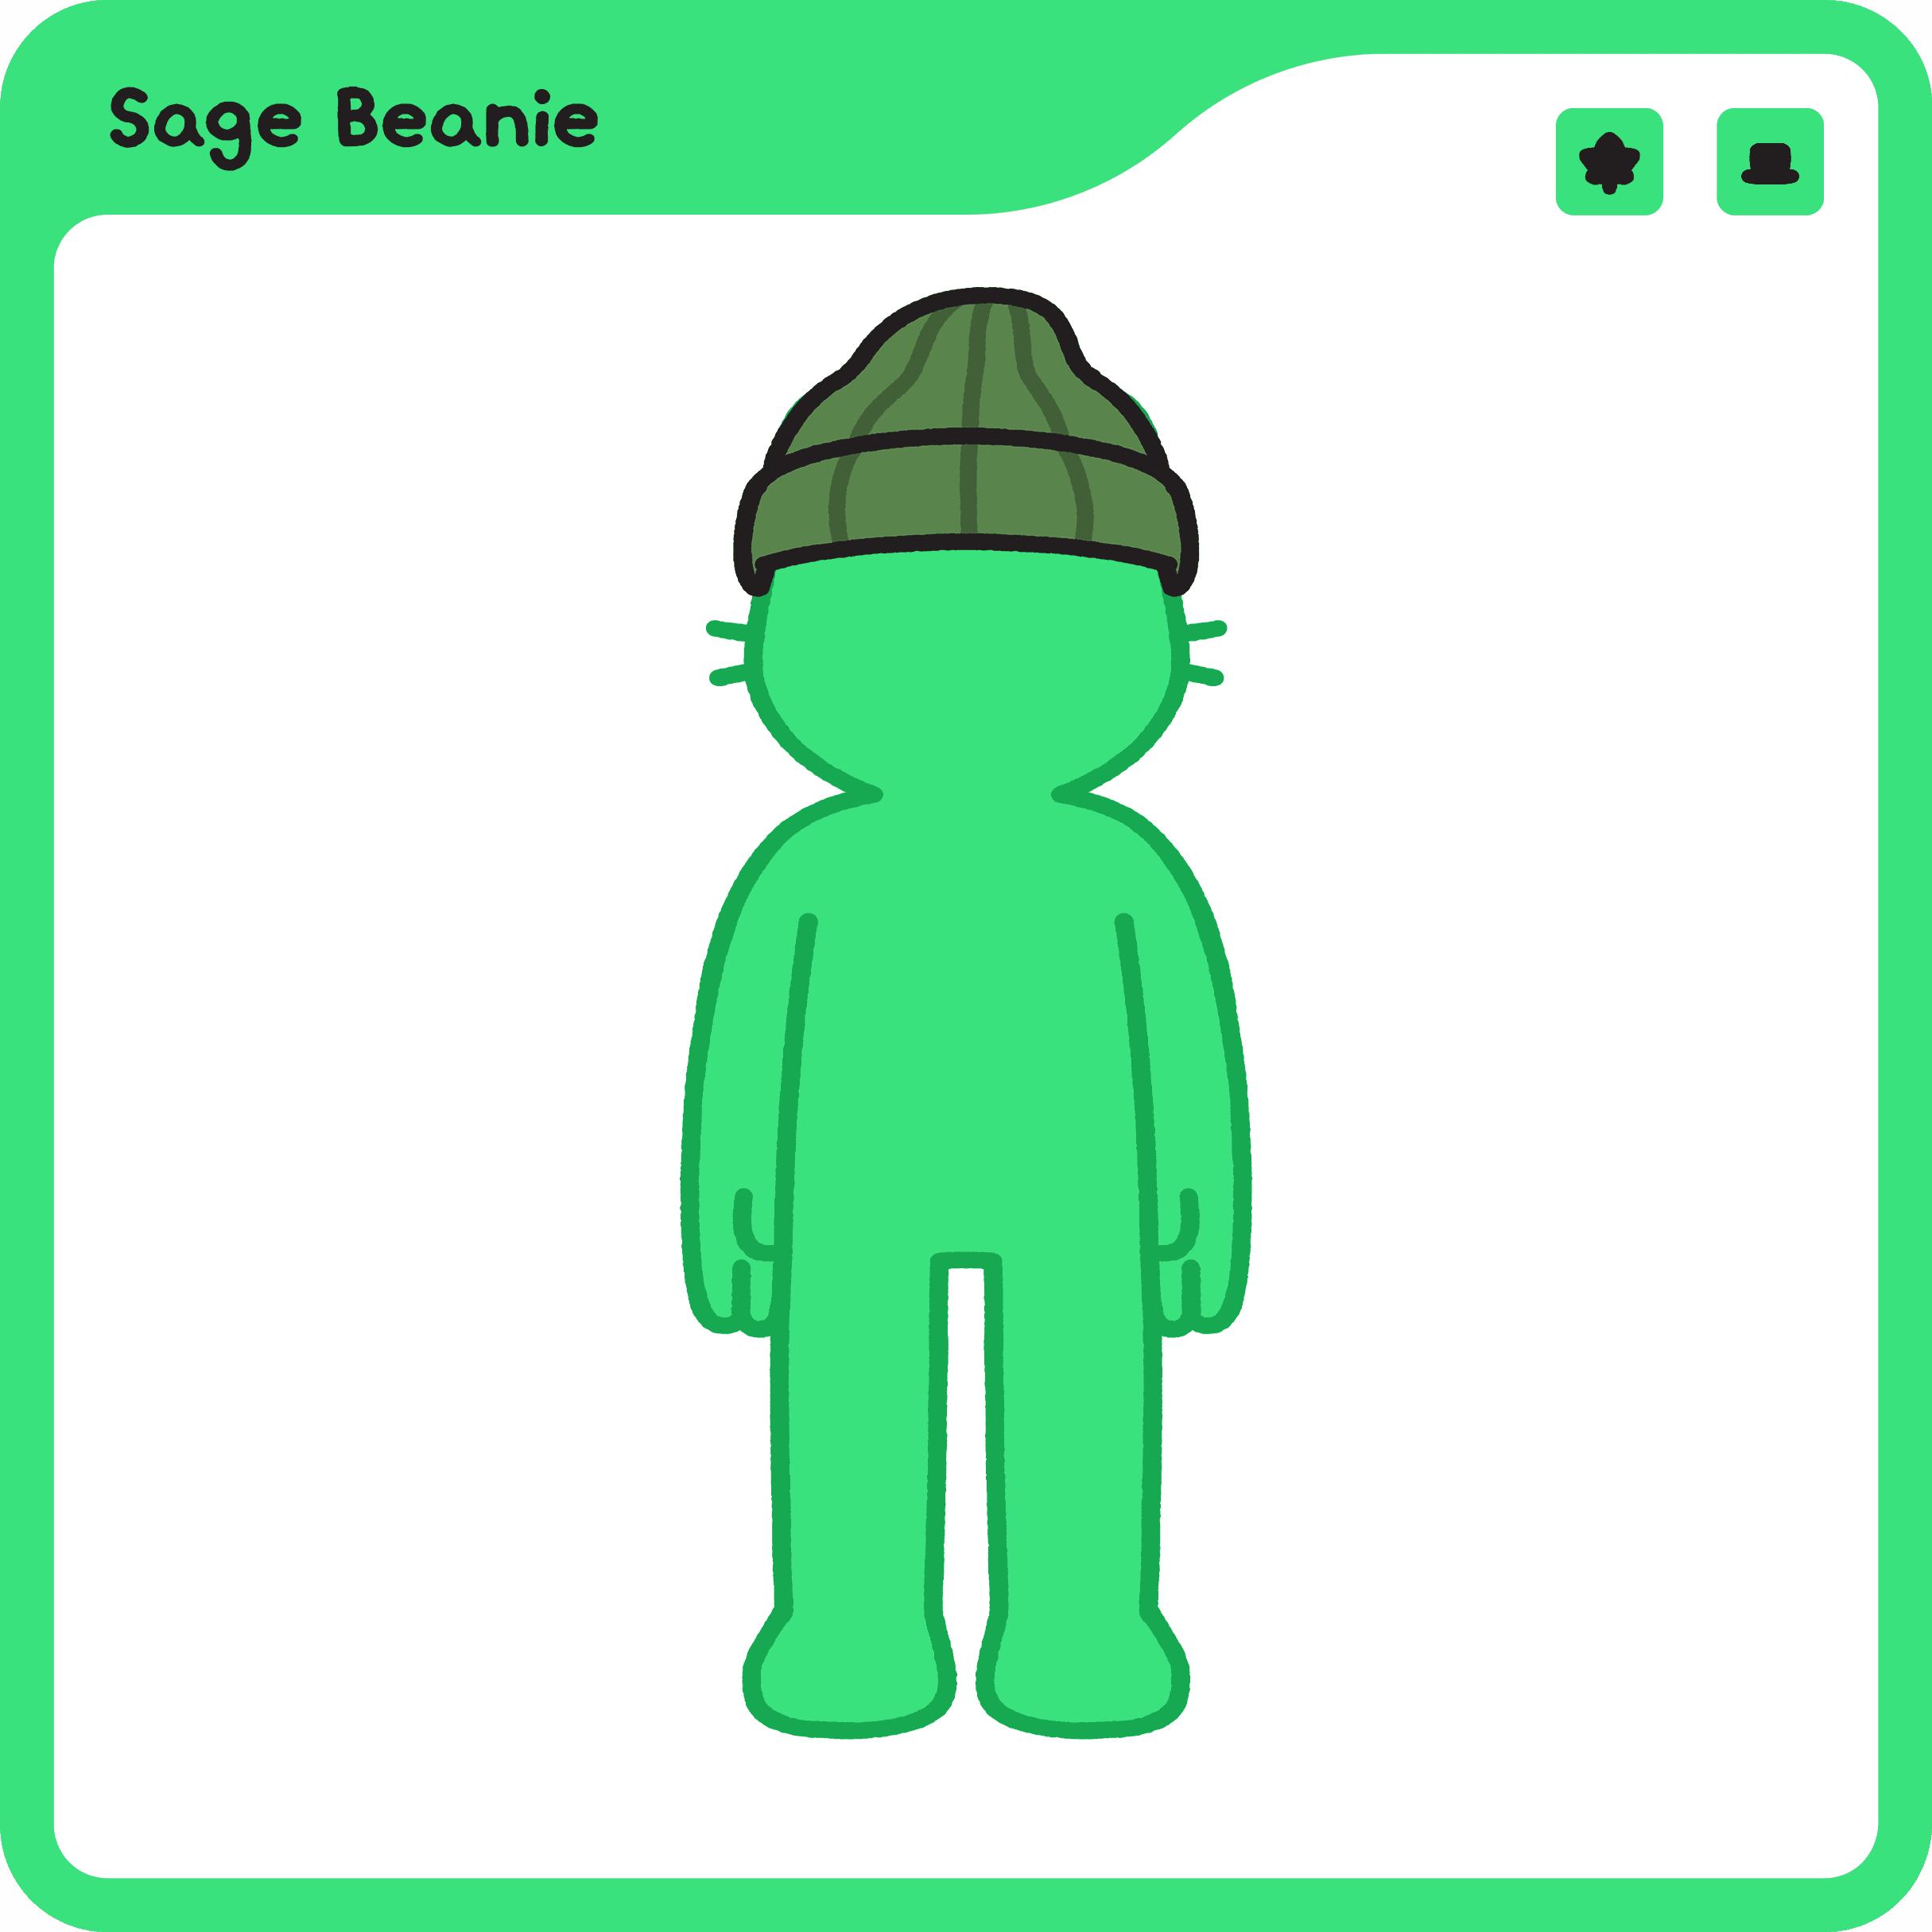 Sage Beanie